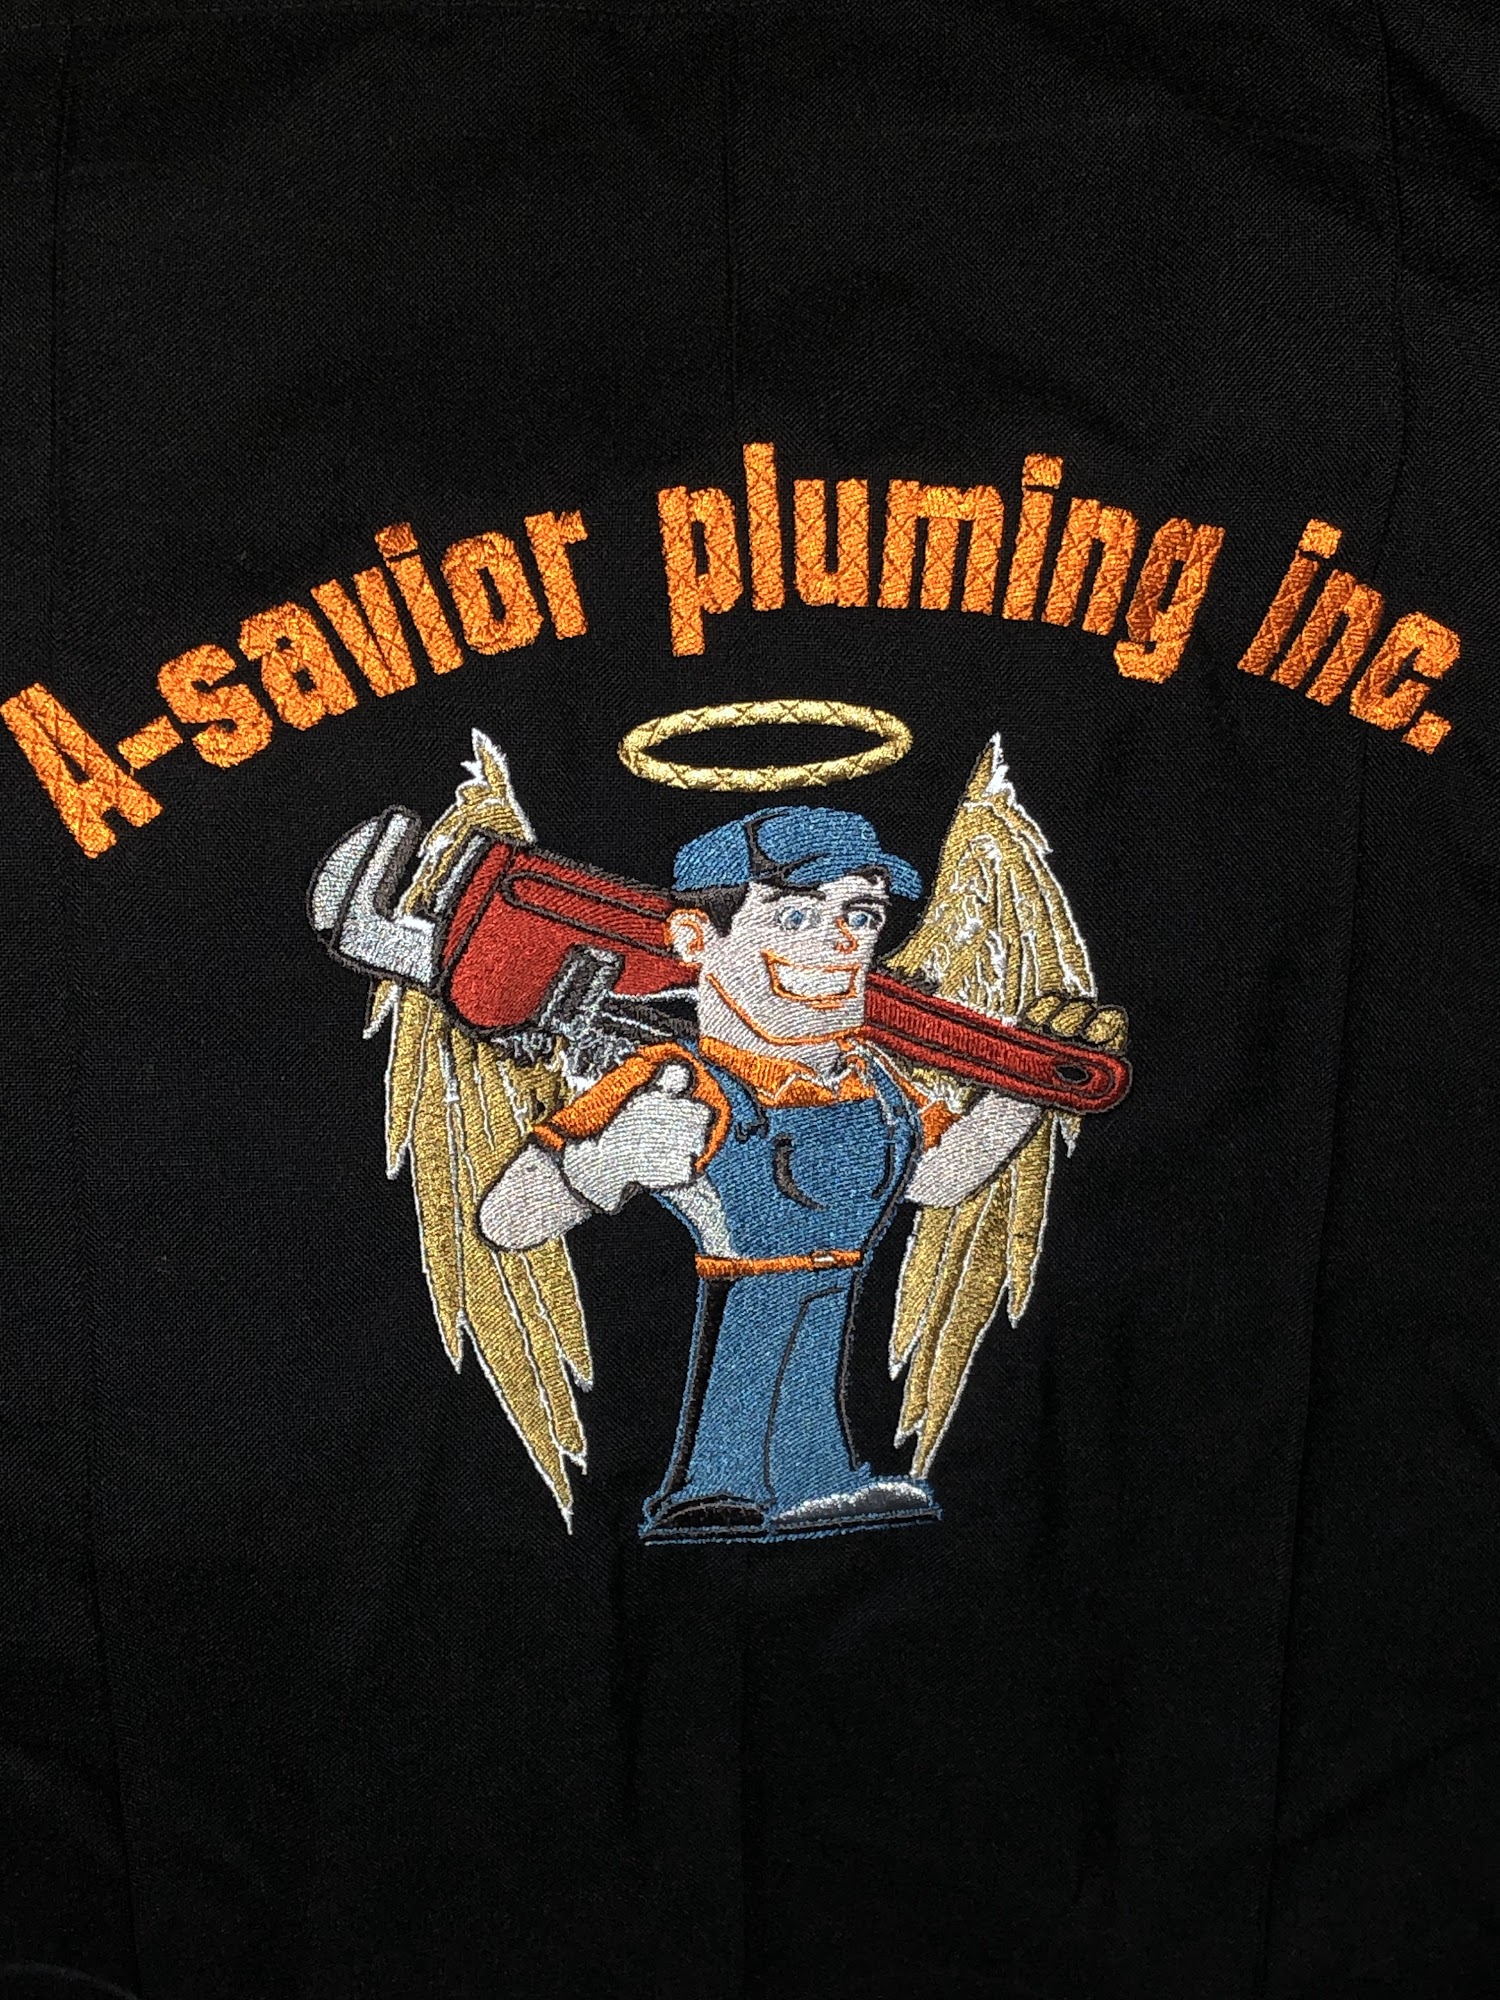 A-Savior Plumbing Inc